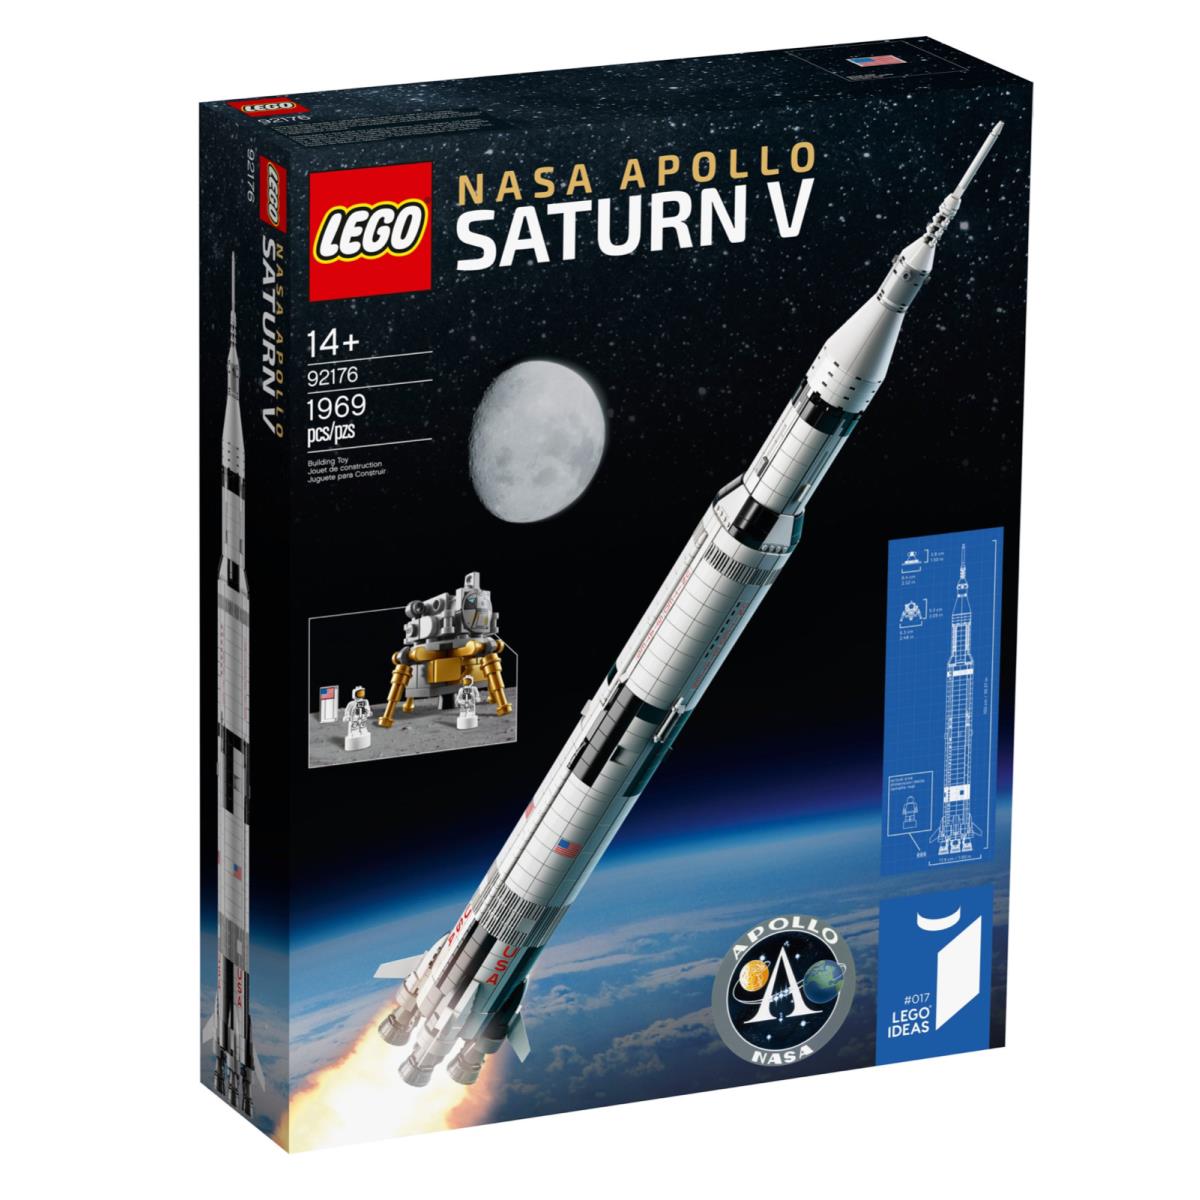 Lego 92176 Nasa Apollo Saturn V Retired Gift Set- Immediate Shipping